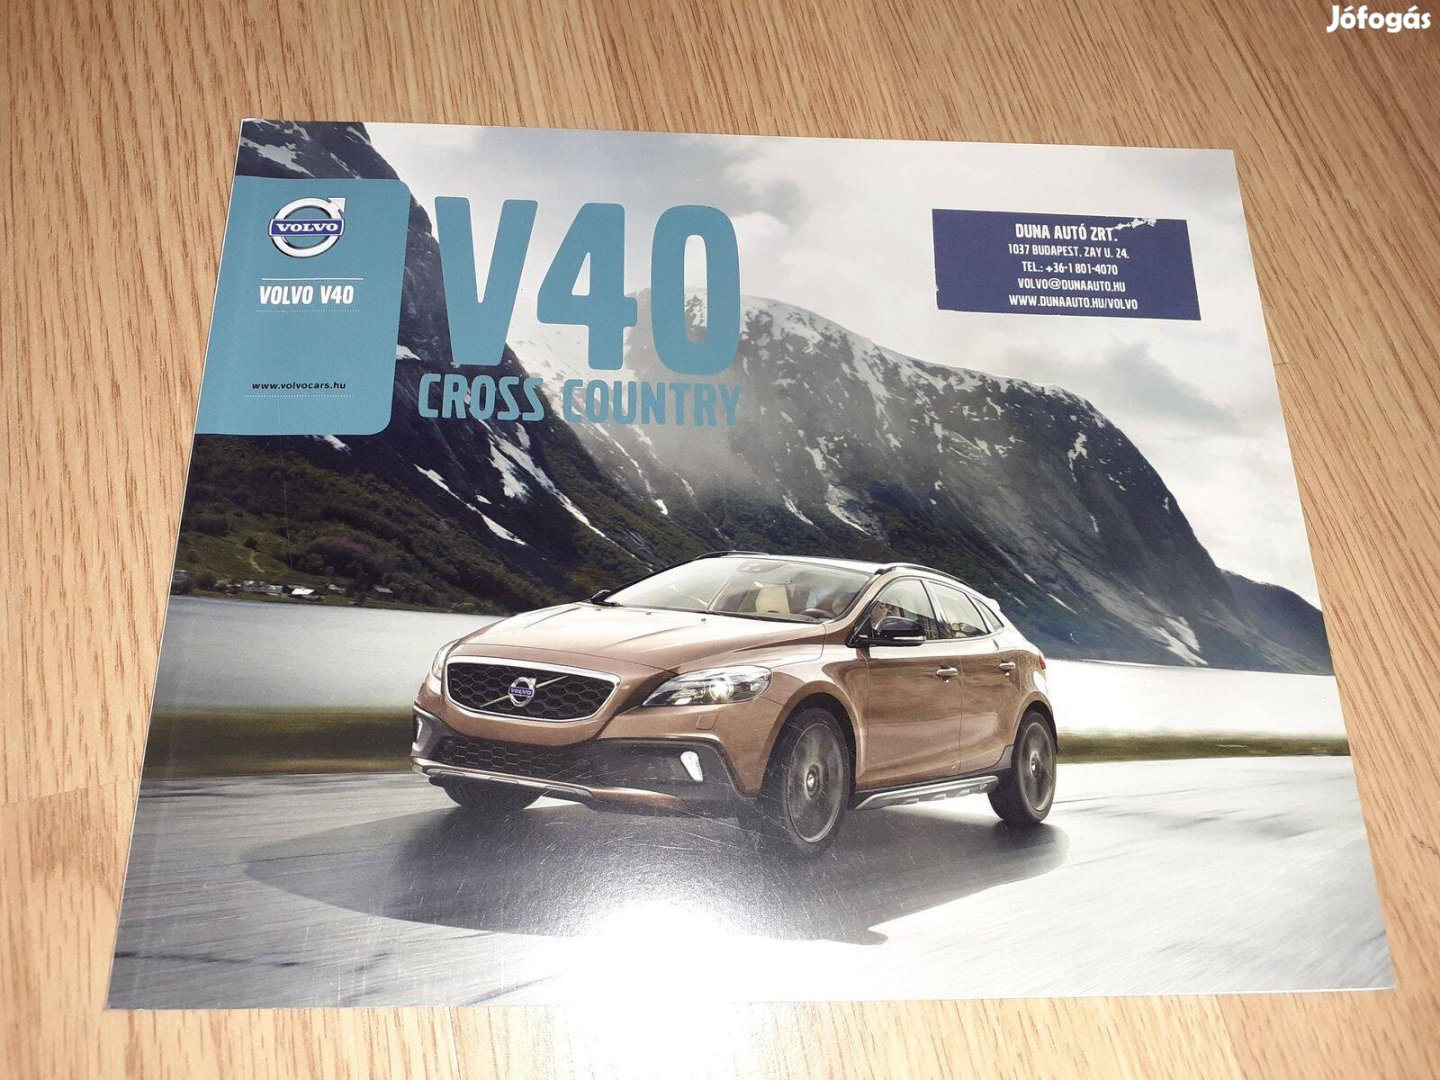 Volvo V40 Cross Country prospektus - 2013, magyar nyelvű